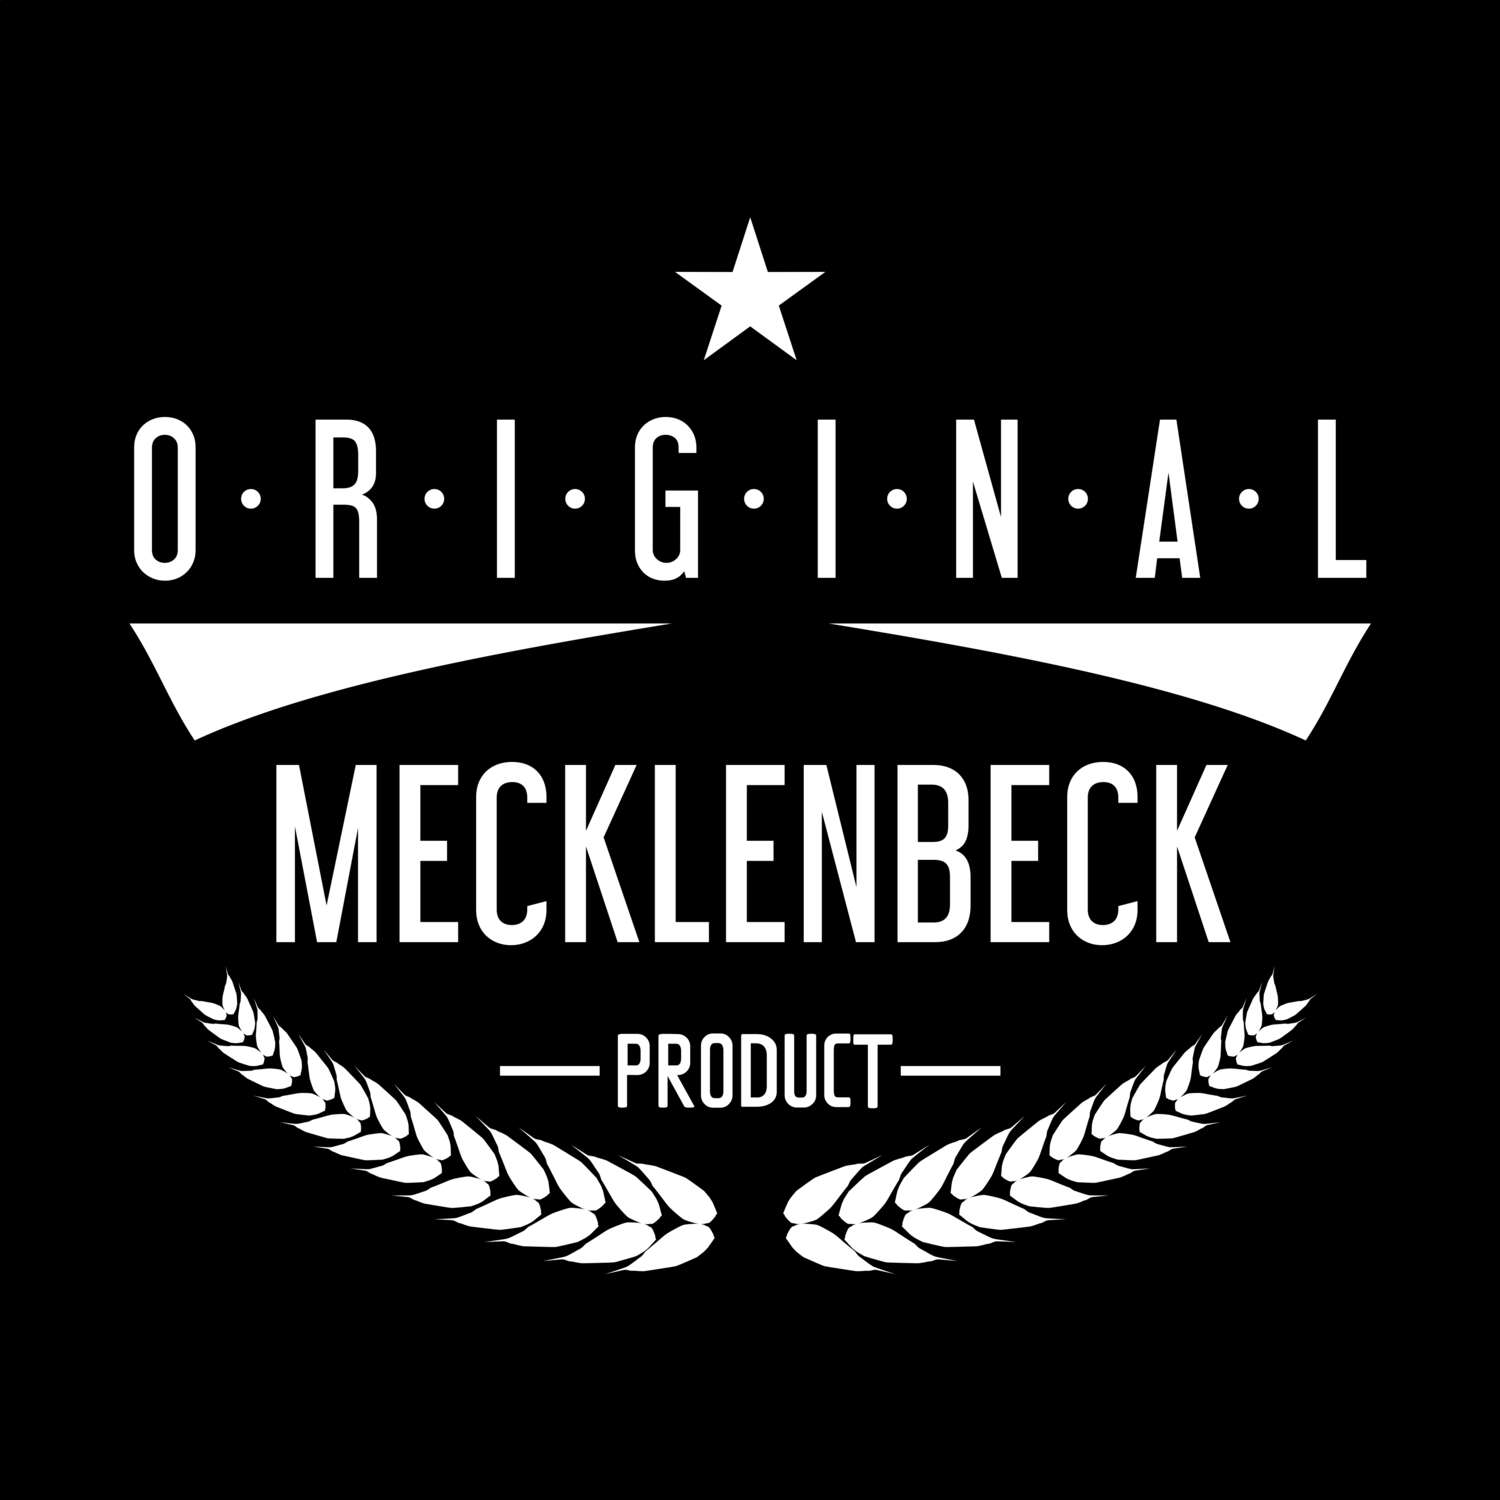 Mecklenbeck T-Shirt »Original Product«